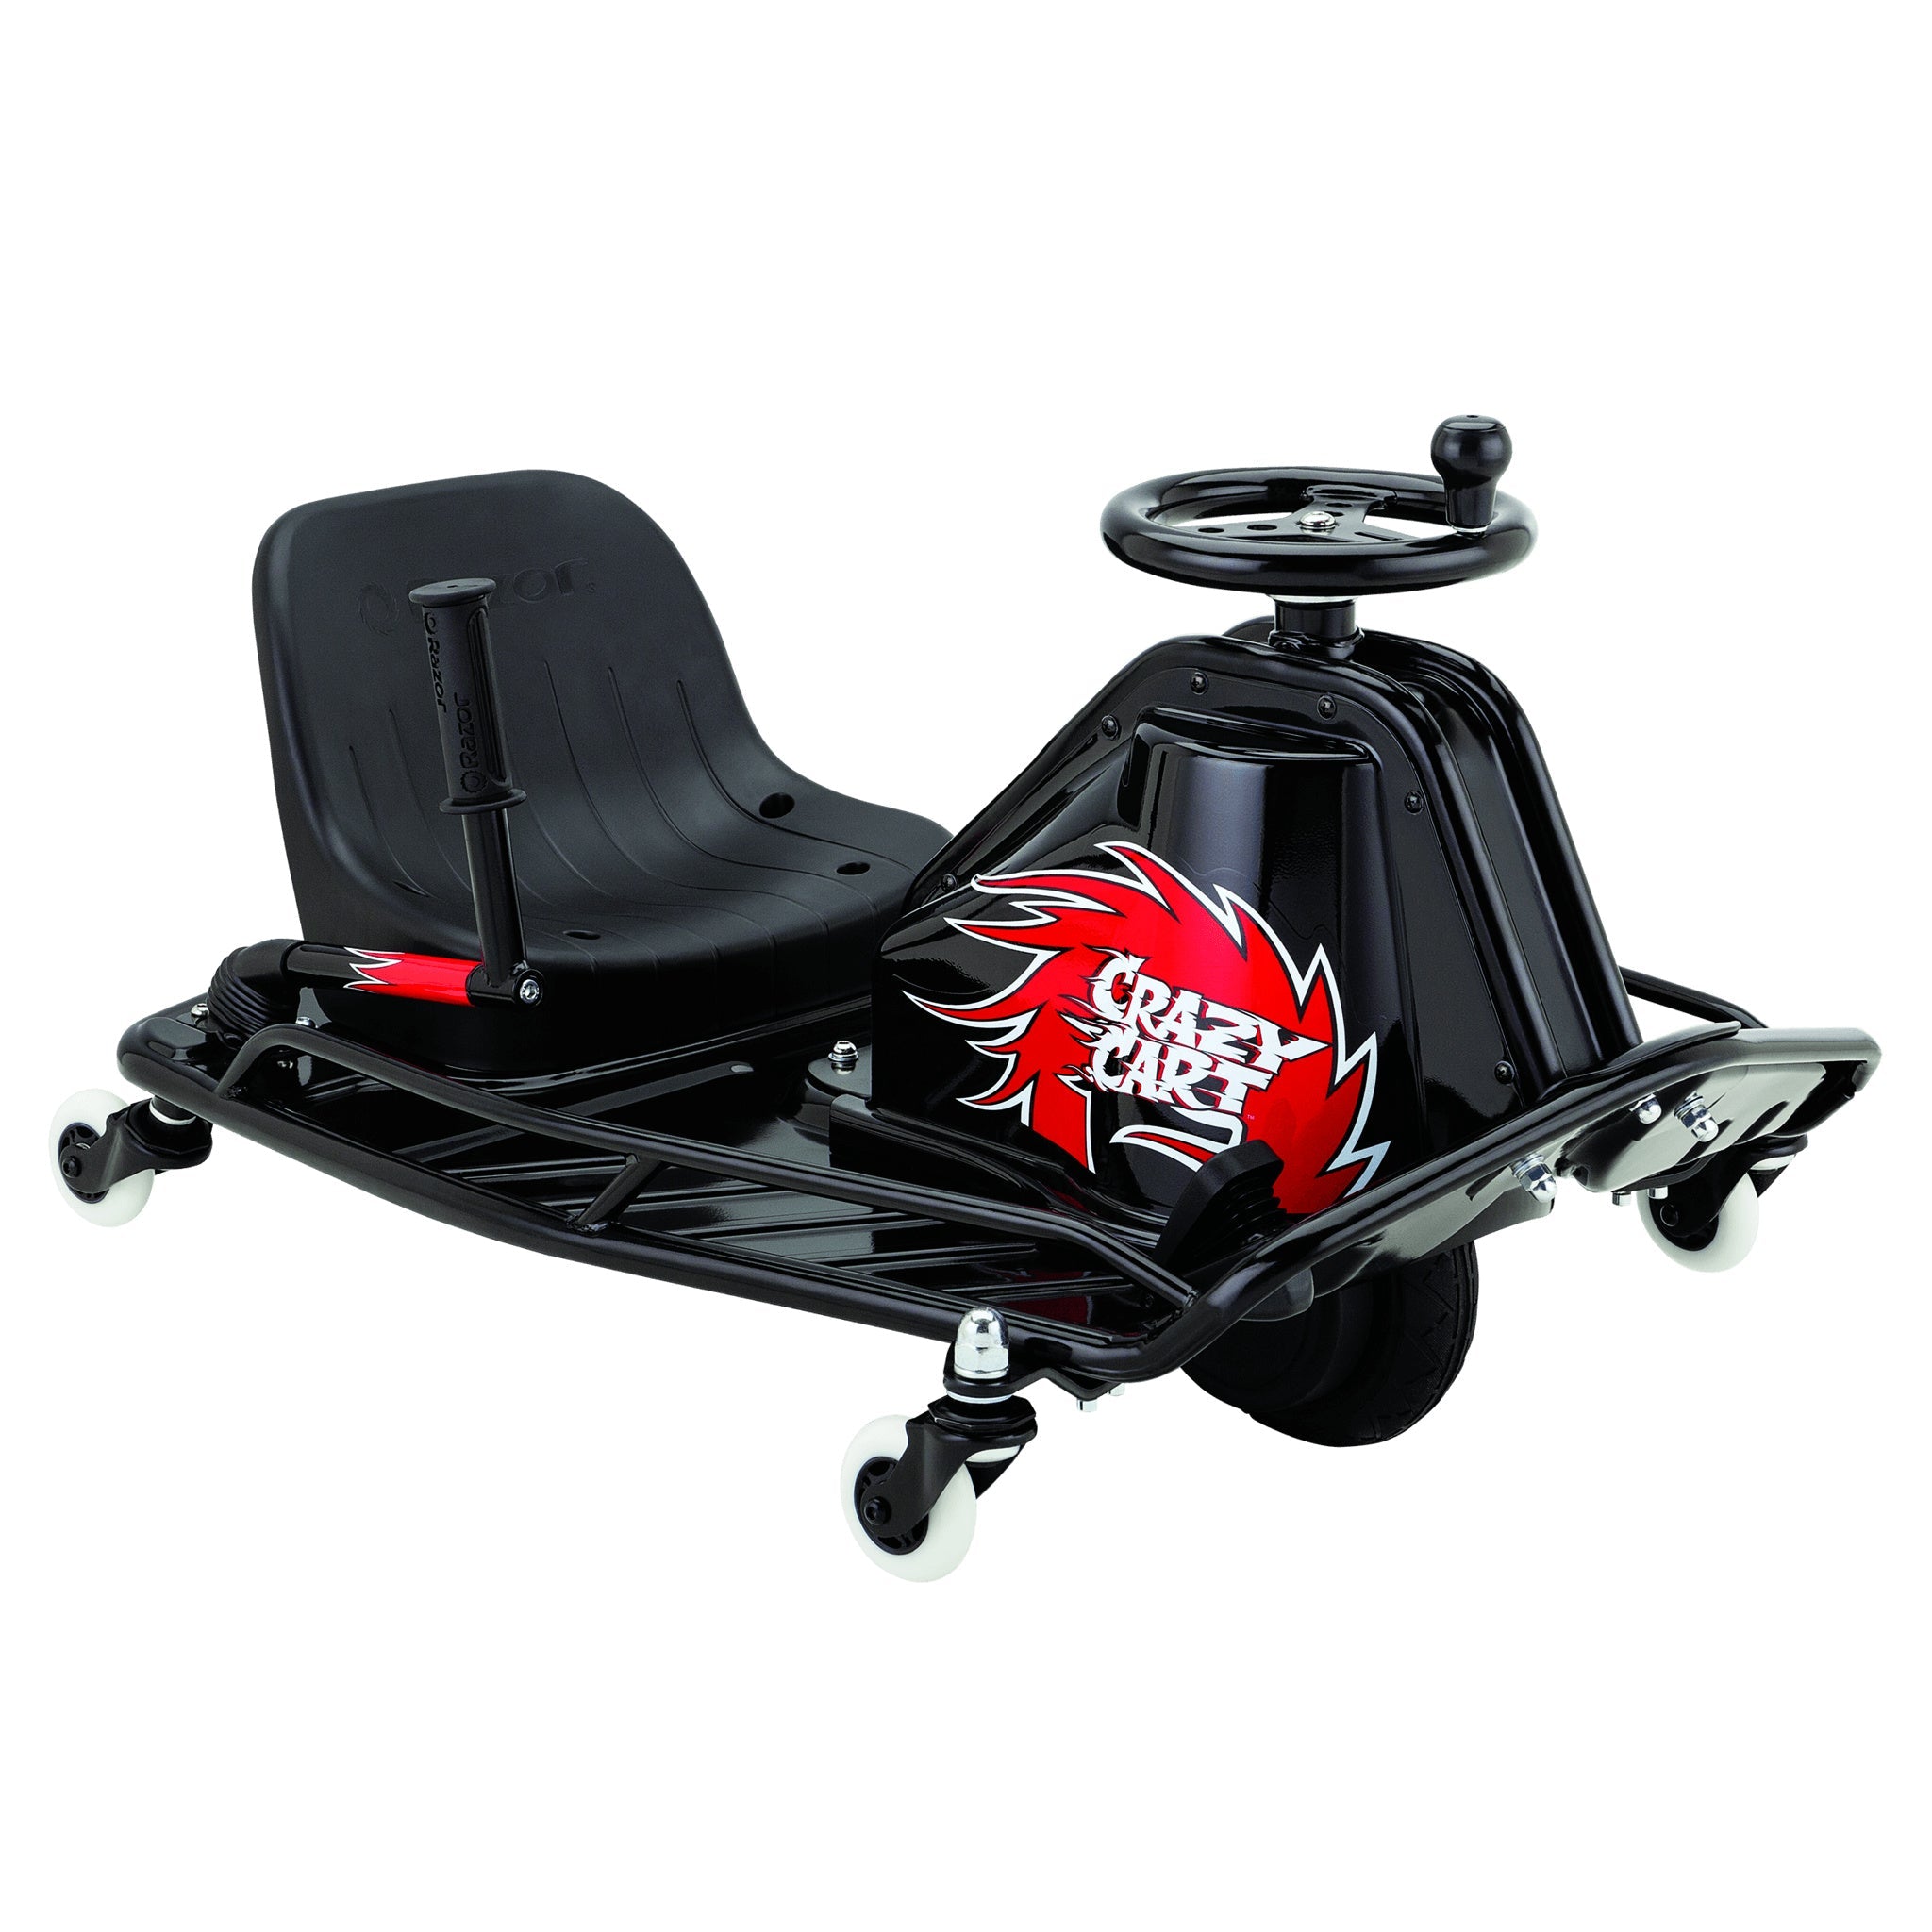 Razor Crazy Cart DLX - 24V Electric Drfting Go Kart